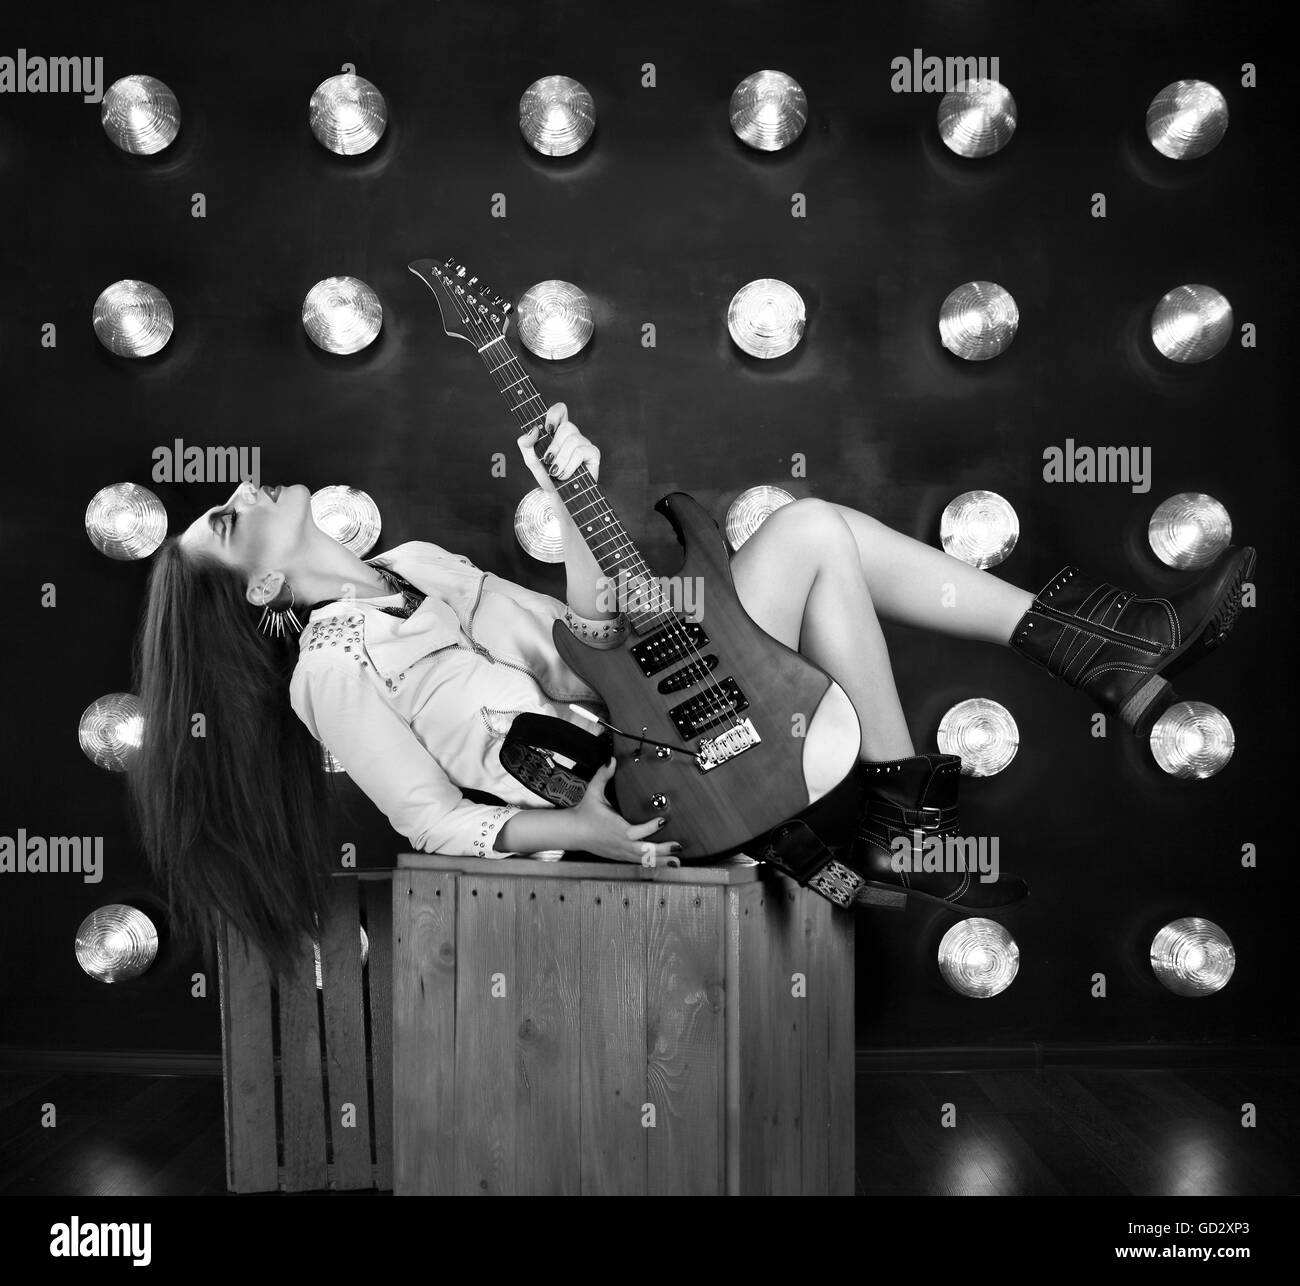 Portrait d'une jolie fille punk avec cool composent holding guitar Banque D'Images